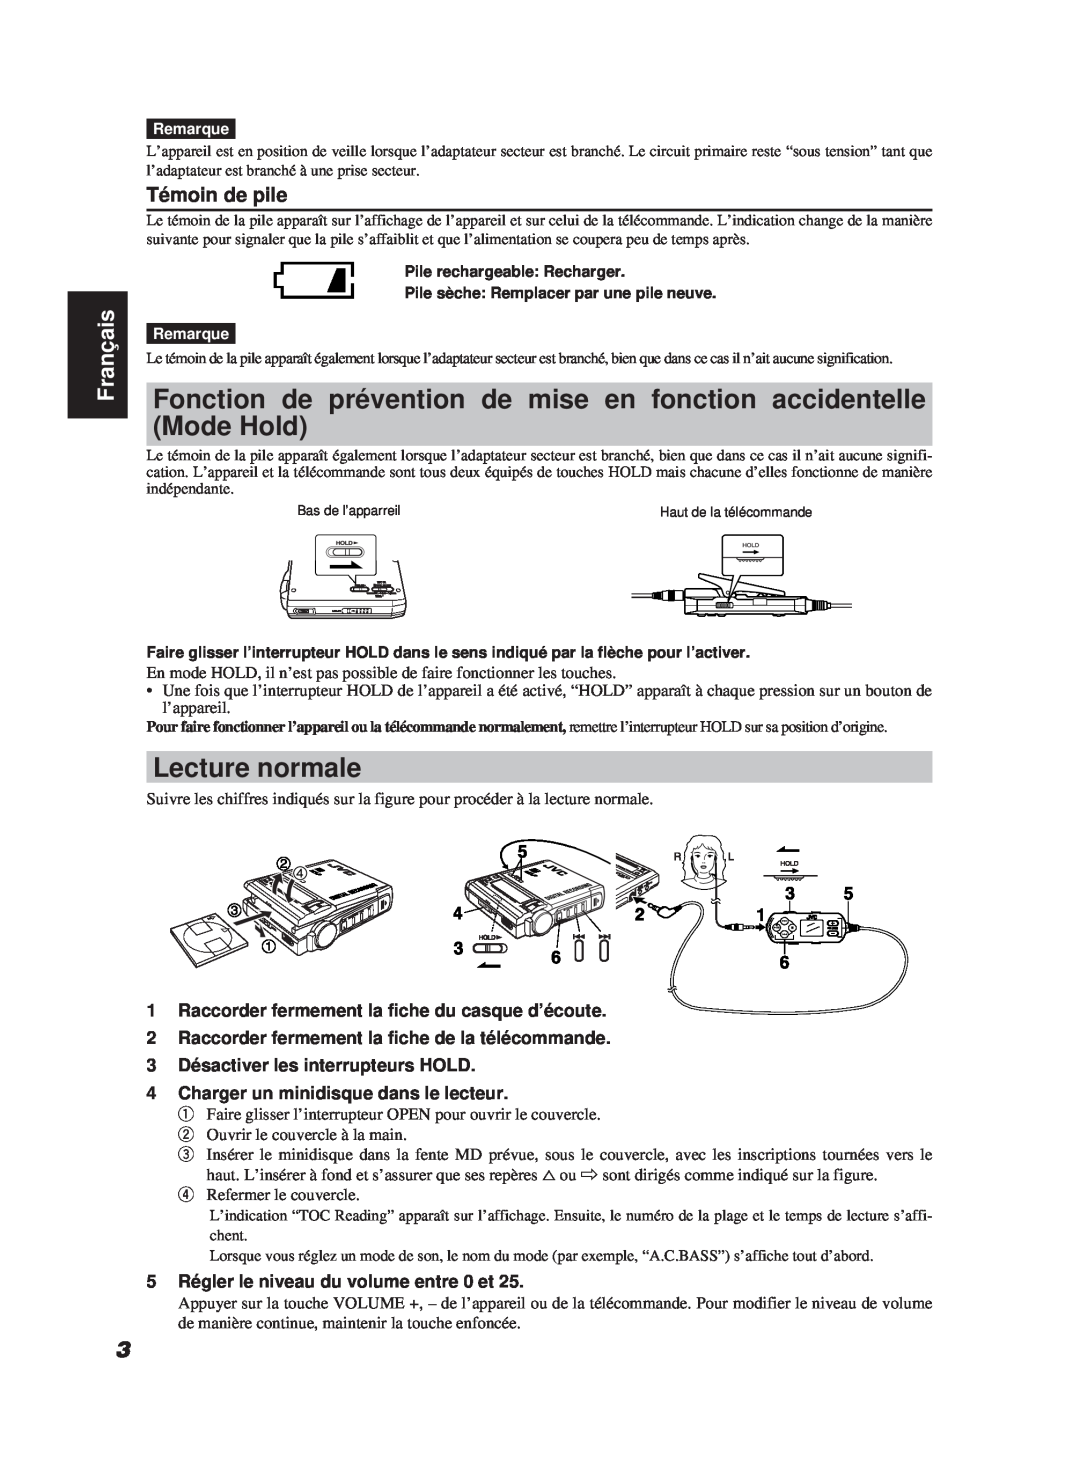 JVC XM-R700SL manual Mode Hold, Lecture normale, Témoin de pile, Français 